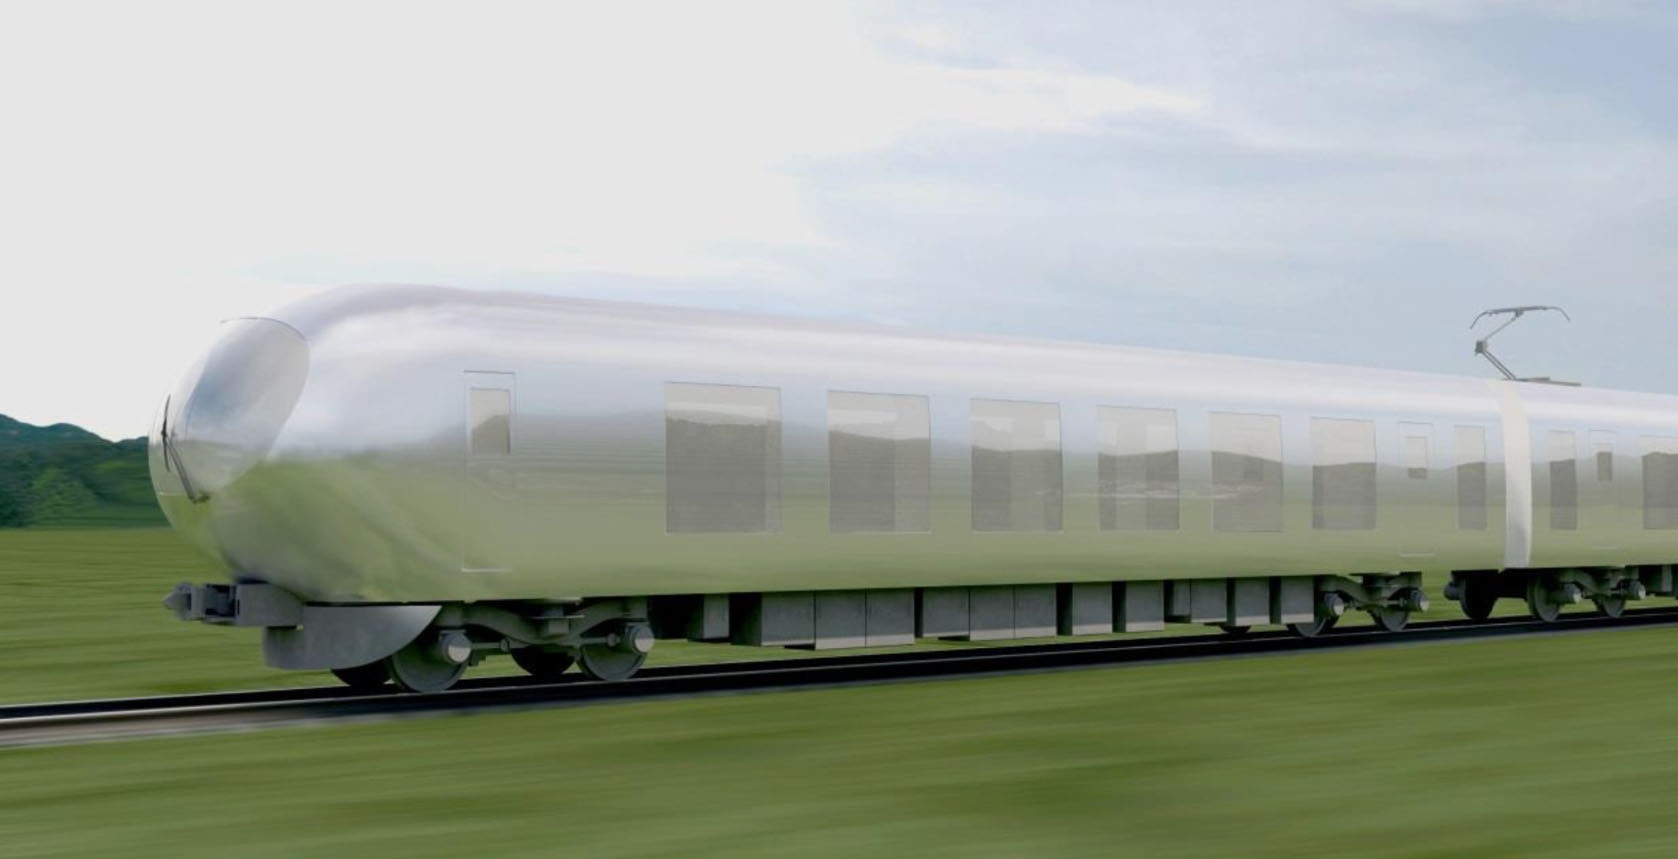 日本特急公布新設計 隱形列車 被嘲像避孕套惹熱議